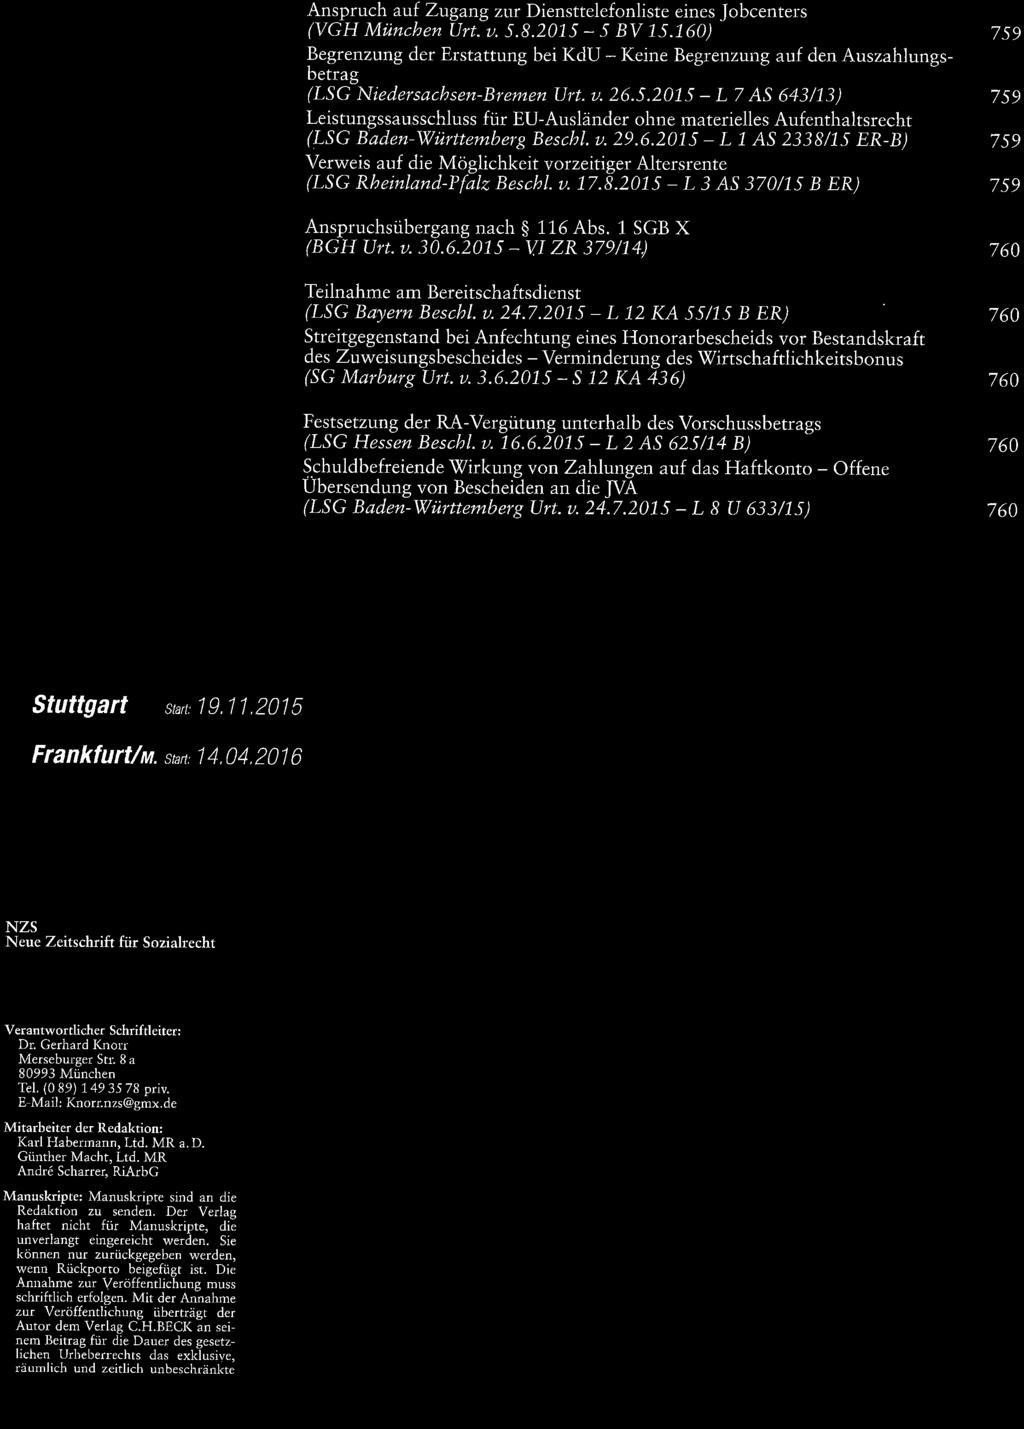 2015 - L 7 AS 643/13) Leistungssausschluss für EU-Ausländer ohne materielles Aufenthaltsrecht (LSG Baden-'Wùrtternbery Bescbl. u.29.6.2015 - L 1 AS 2338/15 ER-B) Verweis auf die Möglichkeit vorzeitiger Altersrente (LSG Rheinland-Pfalz Beschl.